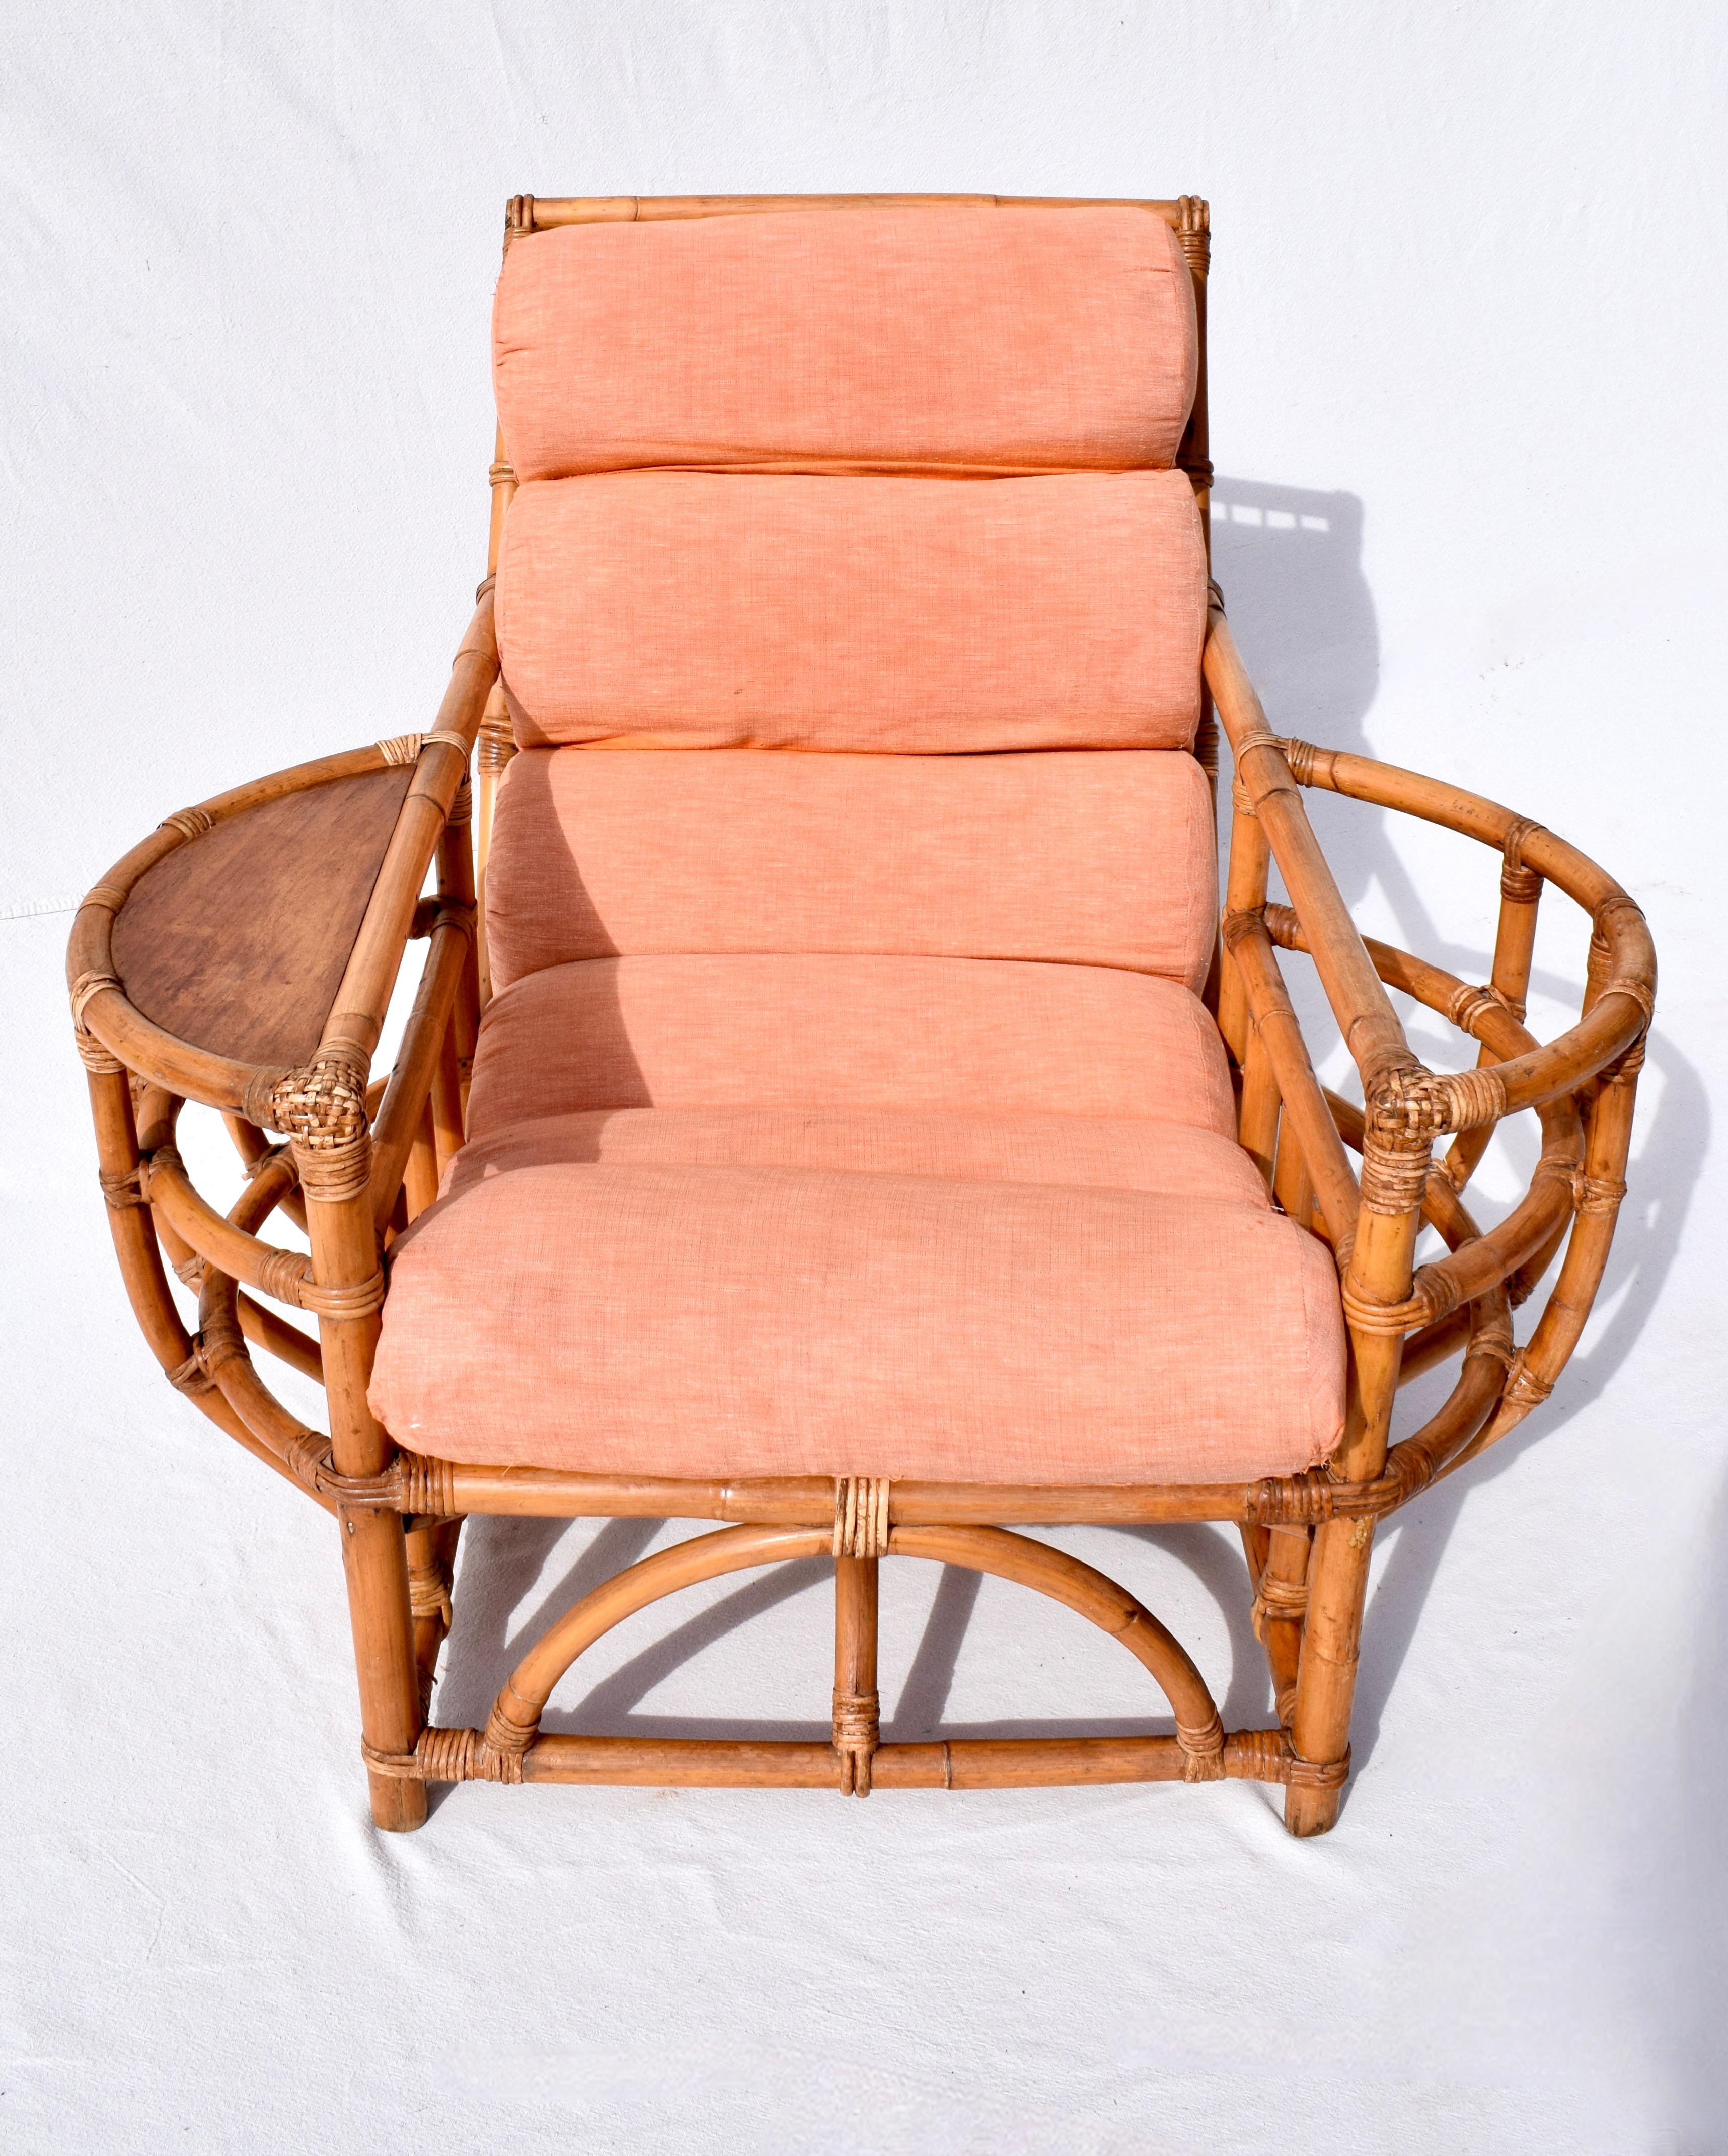 Chaise de salon Ficks Reed en bambou courbé des années 1950 avec coussin rembourré en toile cannelée d'origine exceptionnellement bien entretenu et préservé, pochette pour magazine et surface pour boissons.  Un style rare par sa forme et son état.